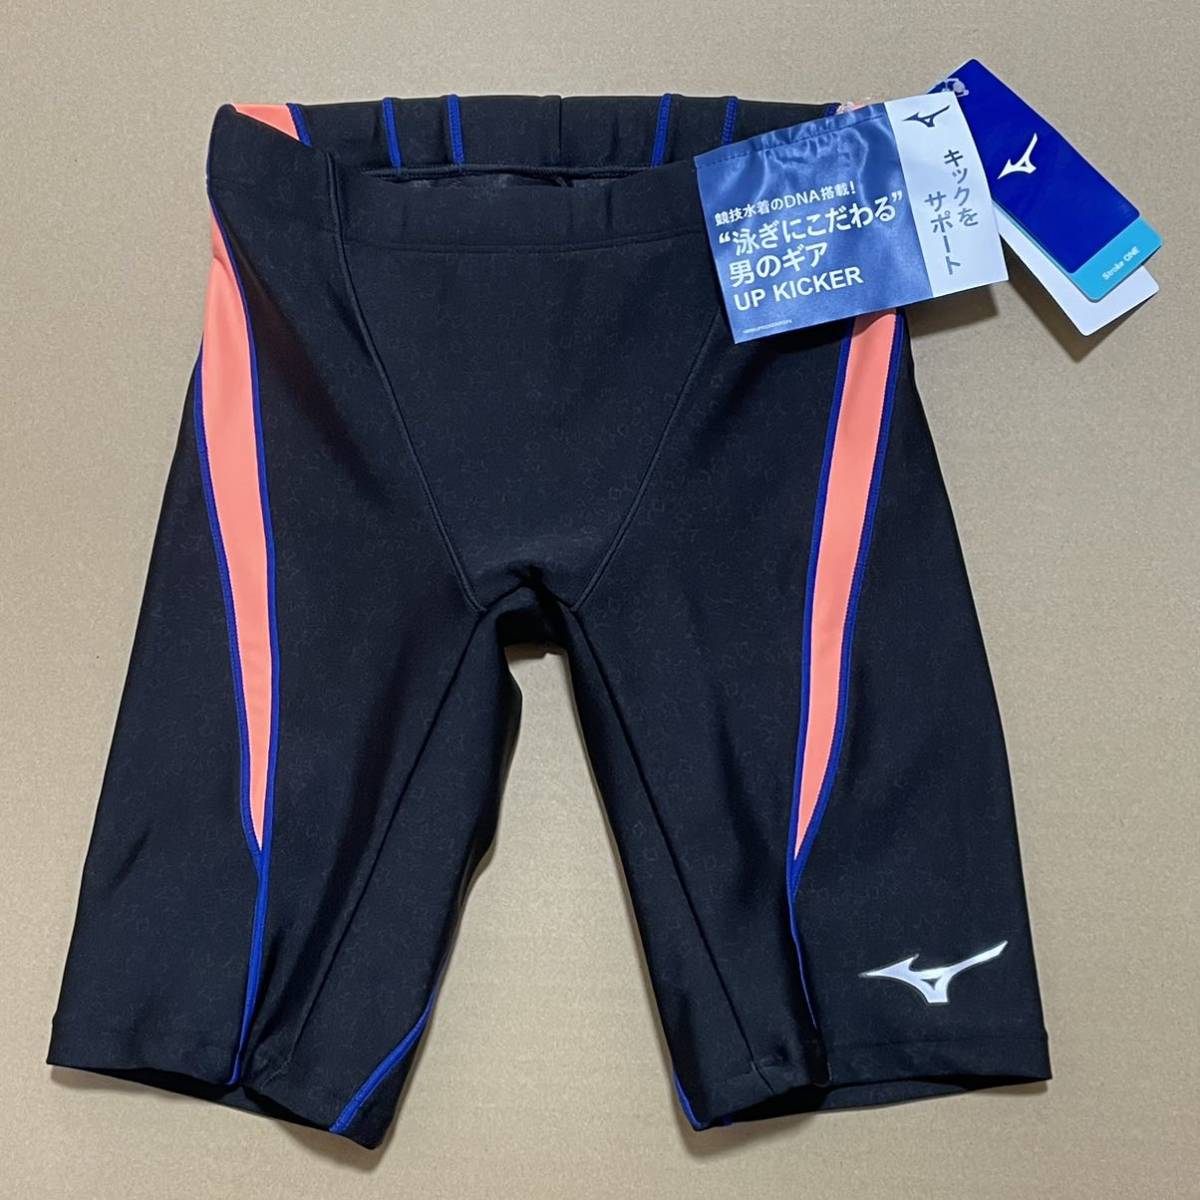  Mizuno мужской фитнес купальный костюм половина леггинсы S размер N2JB010195 тренировка для плавание плавание бассейн .. купальный костюм 